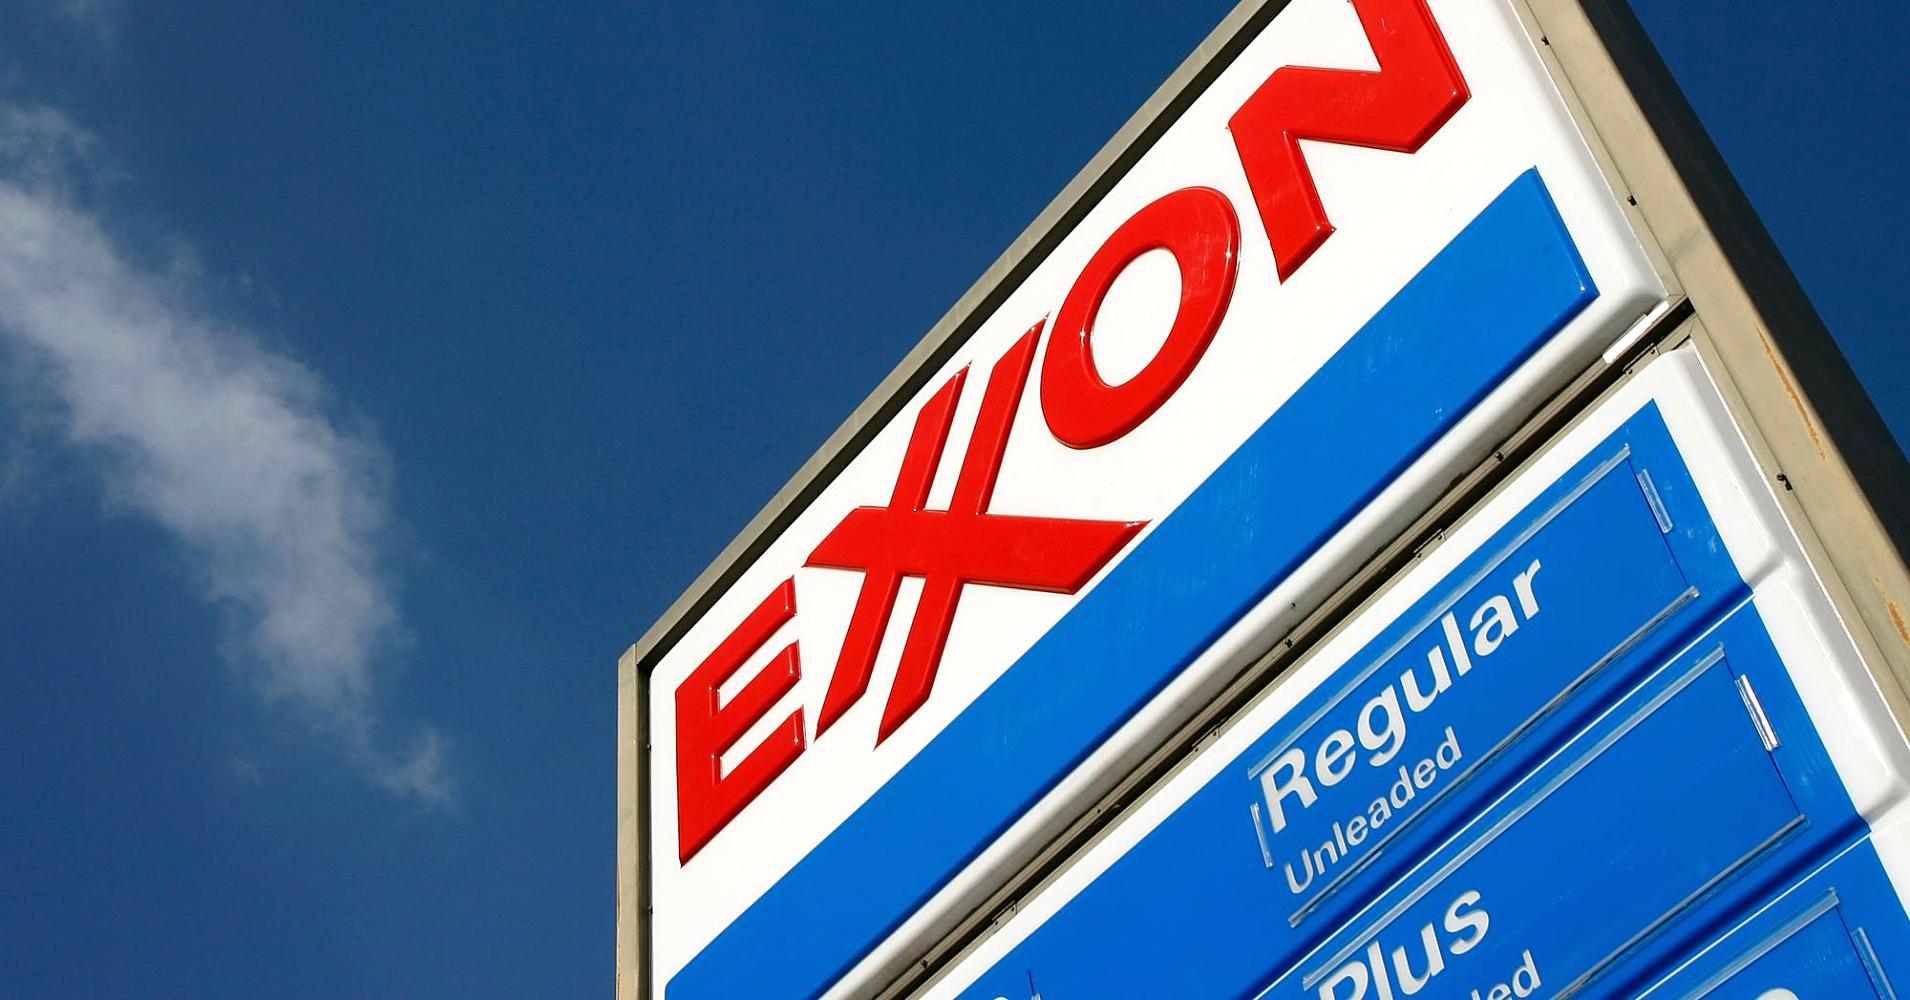 Exxon, svelato documento interno: ha pianificato aumento emissioni di Co2 di 21 milioni di tonnellate